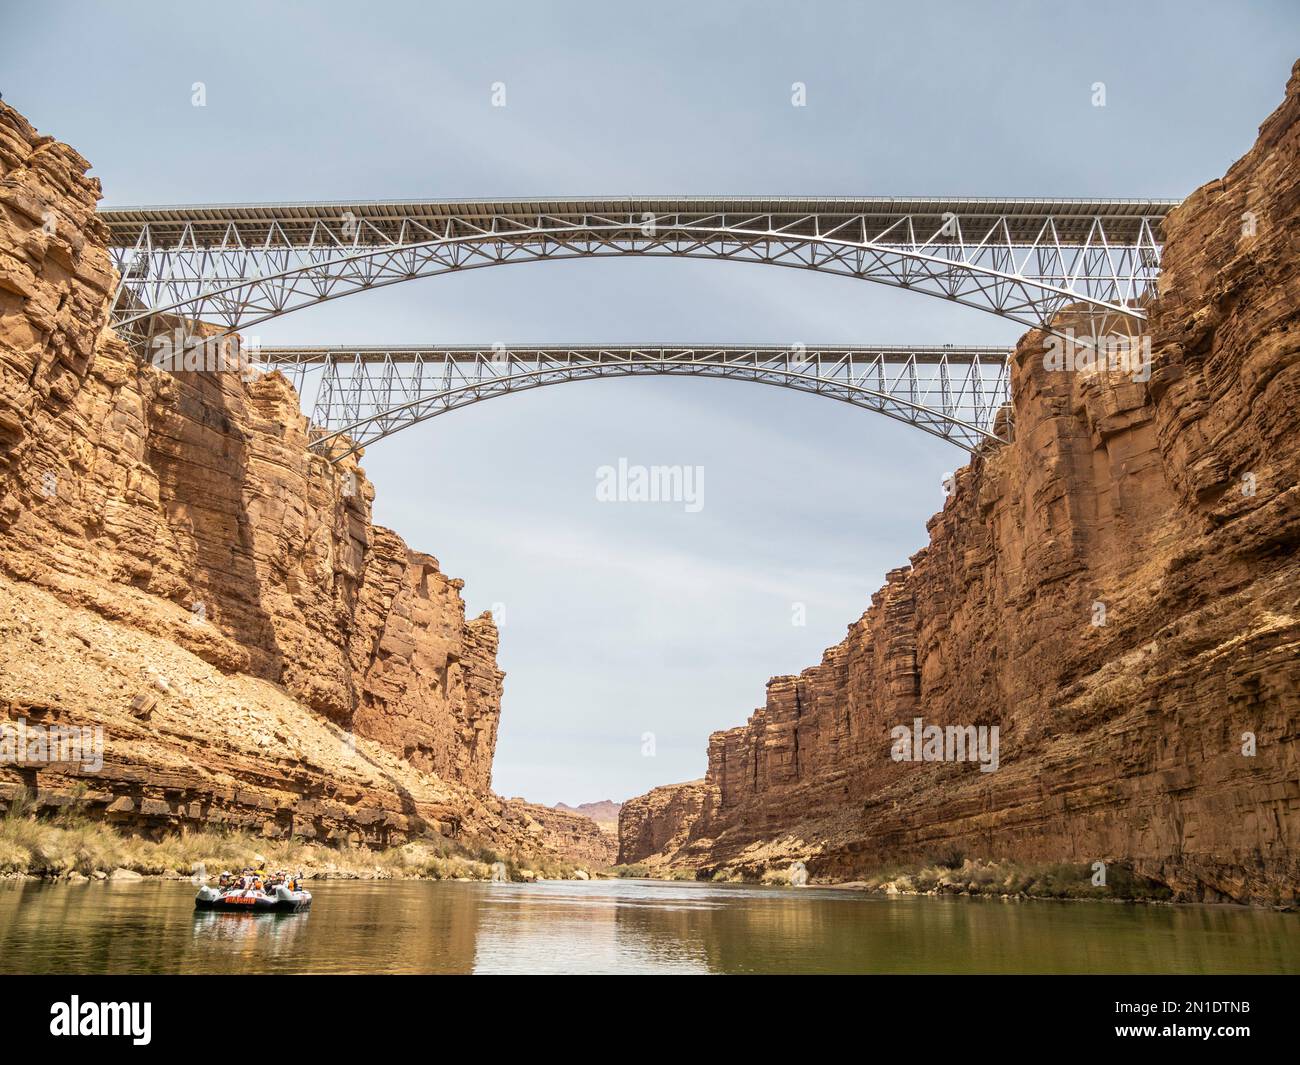 Navajo Bridges vom Colorado River aus gesehen, Grand Canyon Nationalpark, UNESCO-Weltkulturerbe, Arizona, Vereinigte Staaten von Amerika Stockfoto